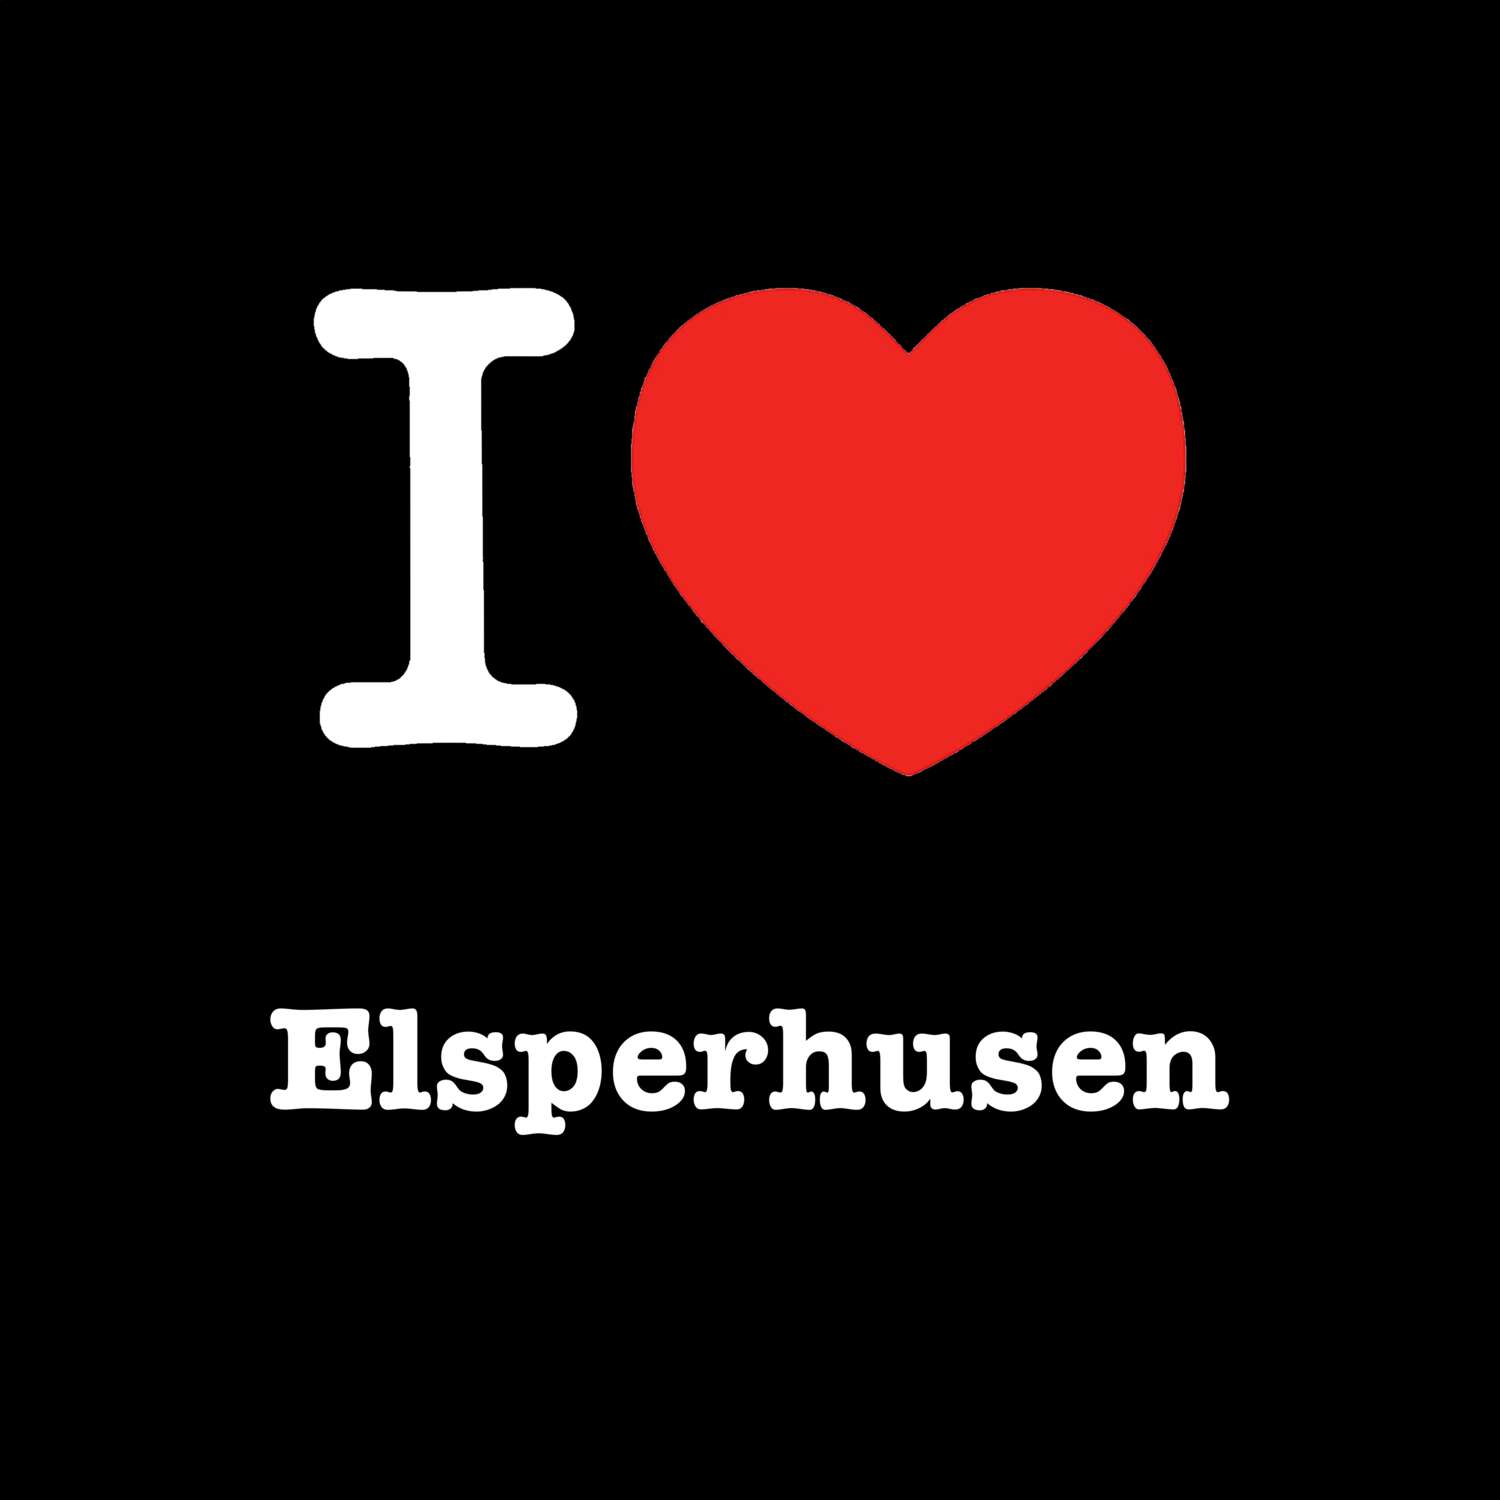 Elsperhusen T-Shirt »I love«